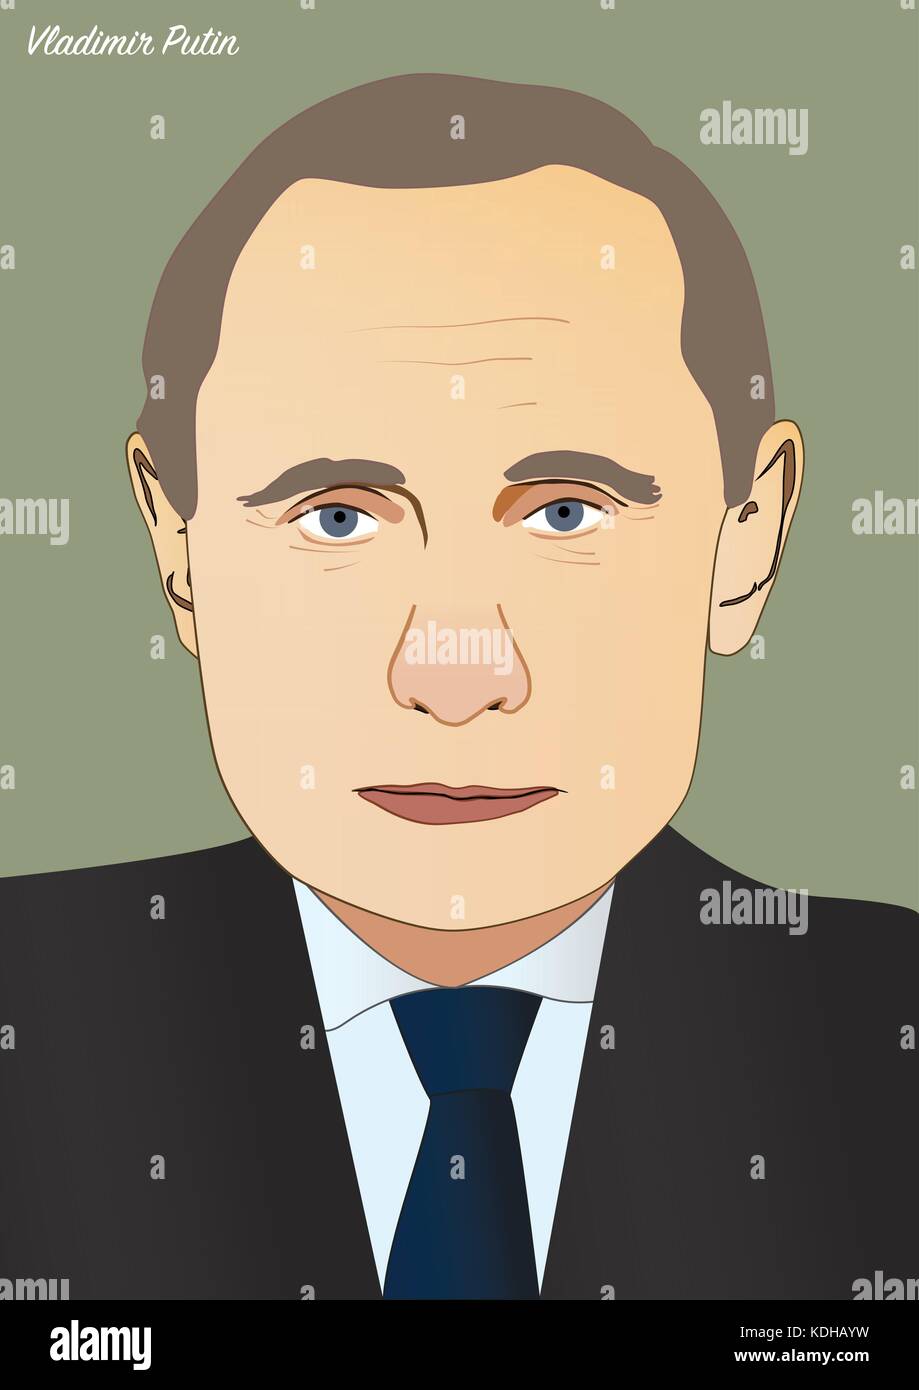 Kiev/Ukraine - Octobre 14, 2017 portrait de vecteur : Vladimir Poutine, président de la Fédération de Russie Illustration de Vecteur